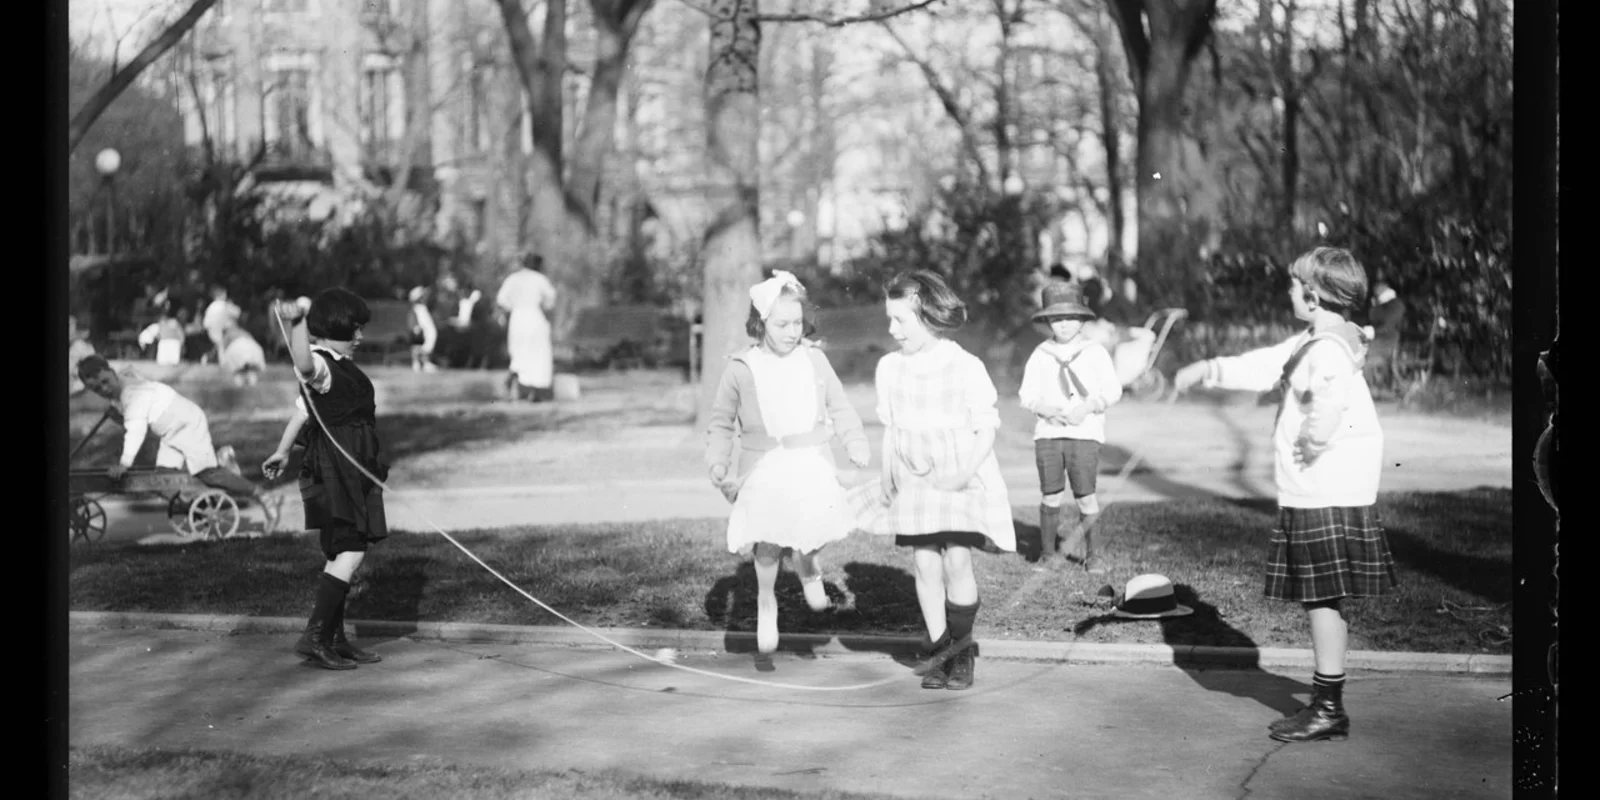 Schwarz-weiß Aufnahme von spielenden Kindern in einem Park im Jahr 1919. Im Vordergrund schwingen zwei Mädchen ein Seil, über das zwei weitere Mädchen springen.